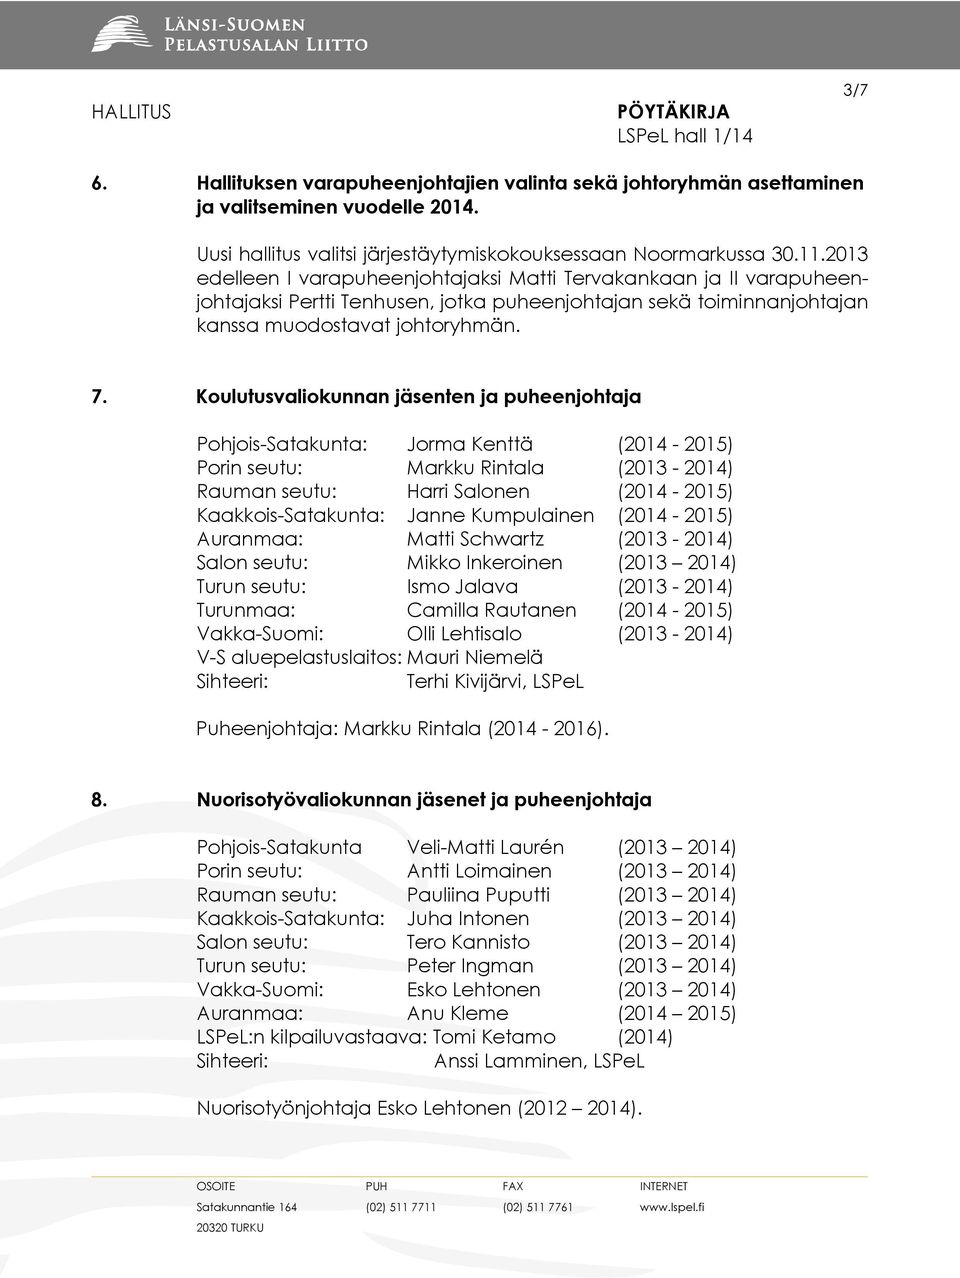 Koulutusvaliokunnan jäsenten ja puheenjohtaja Pohjois-Satakunta: Jorma Kenttä (2014-2015) Porin seutu: Markku Rintala (2013-2014) Rauman seutu: Harri Salonen (2014-2015) Kaakkois-Satakunta: Janne